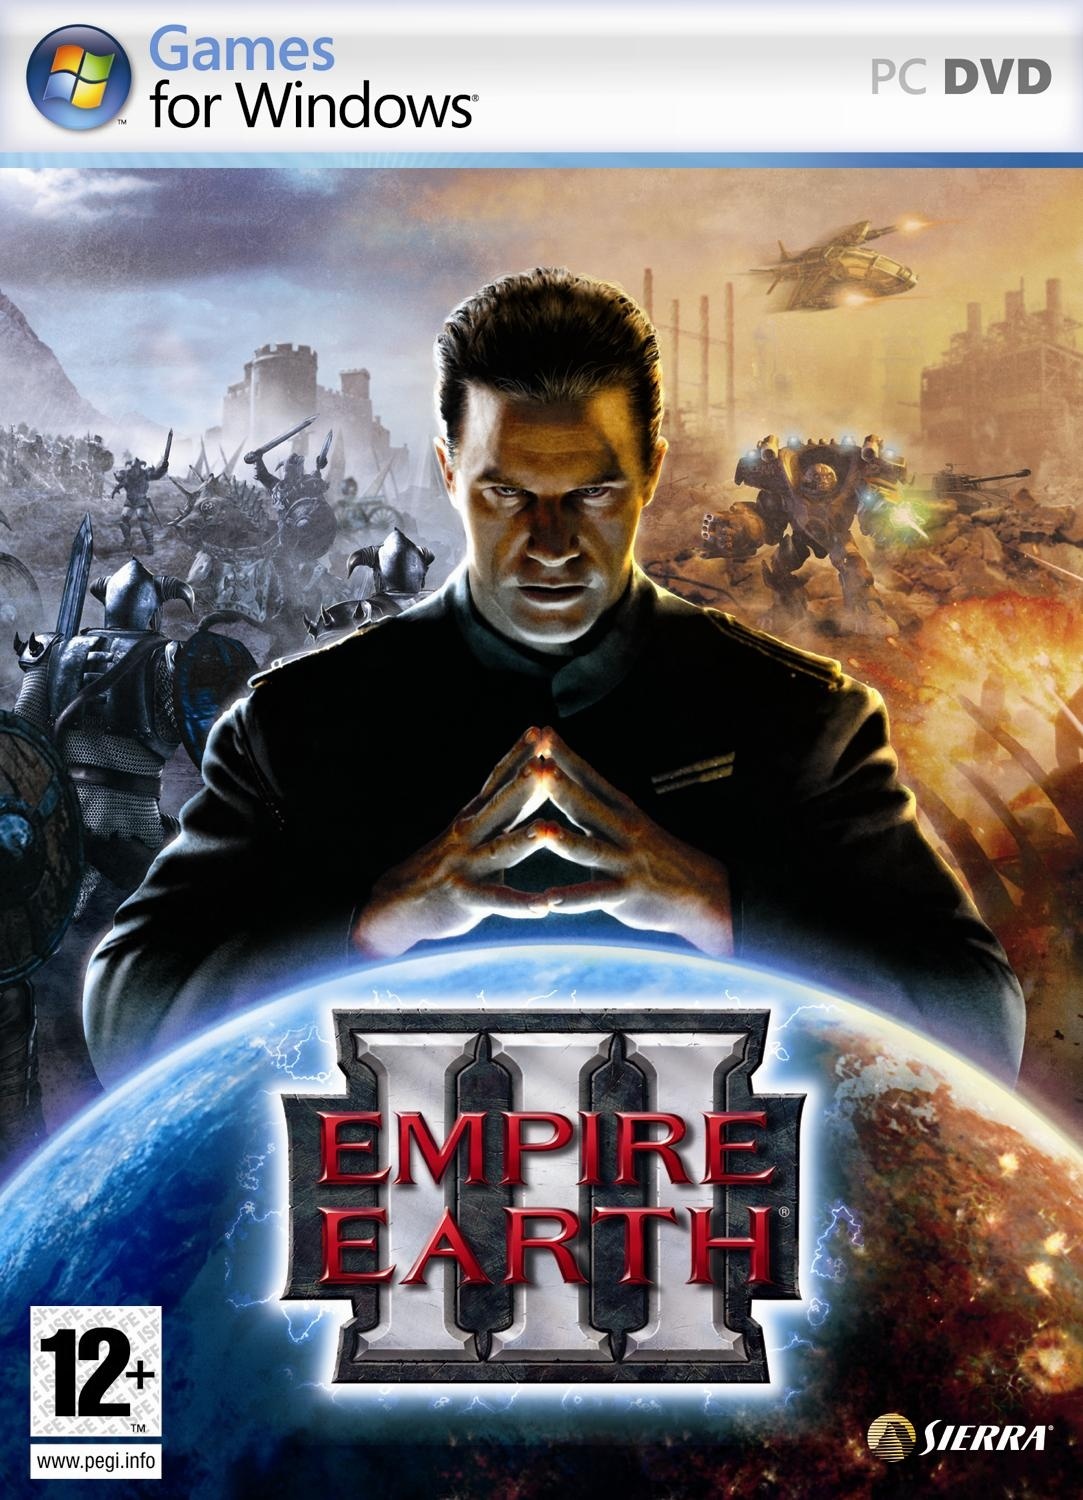 empire earth 3 kostenlos downloaden vollversion